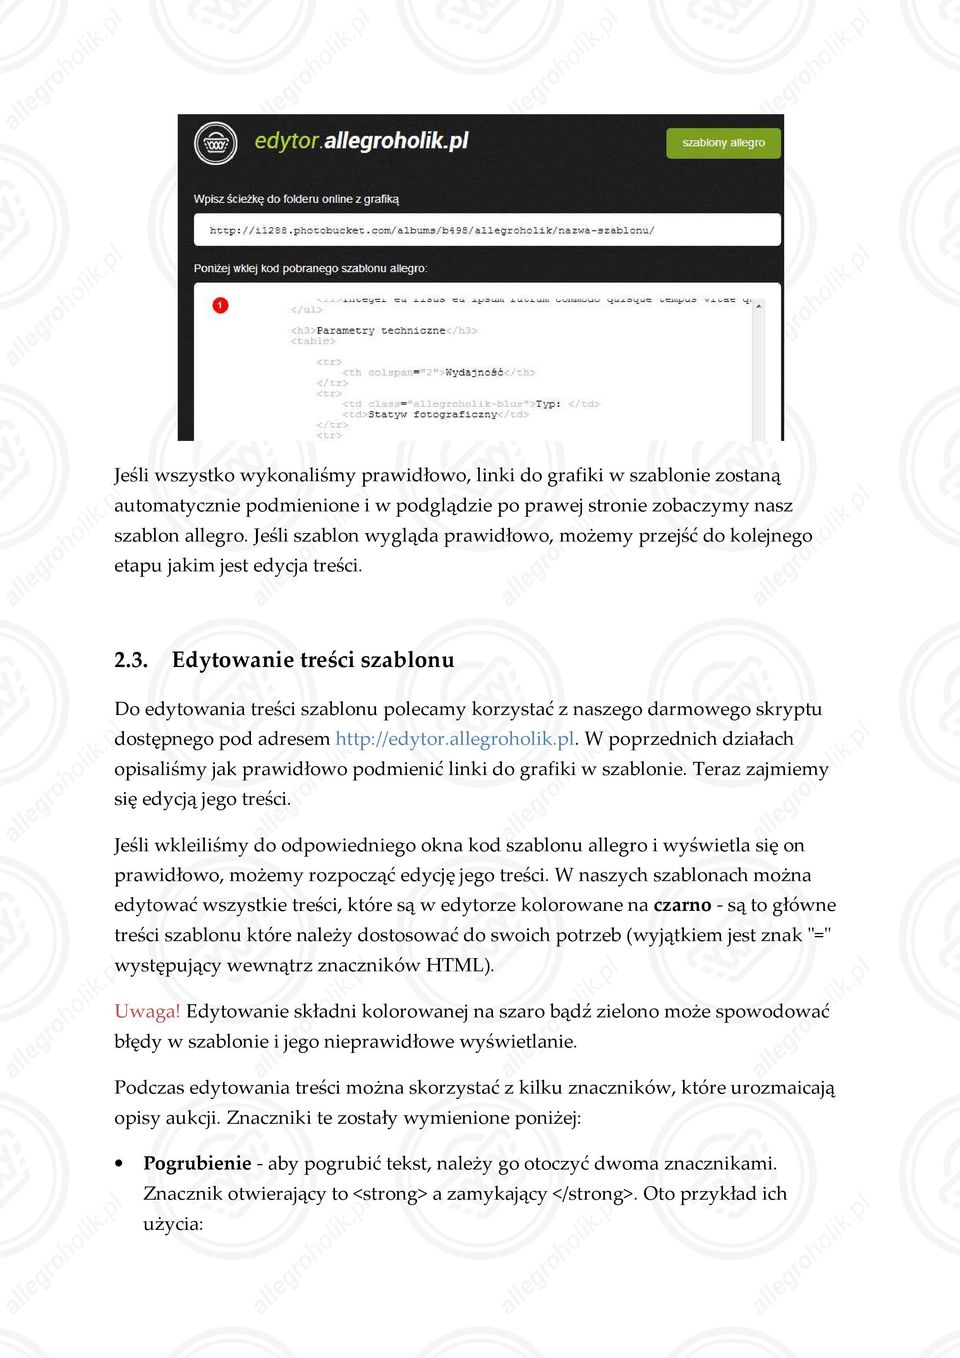 Edytowanie treści szablonu Do edytowania treści szablonu polecamy korzystać z naszego darmowego skryptu dostępnego pod adresem http://edytor.allegroholik.pl.